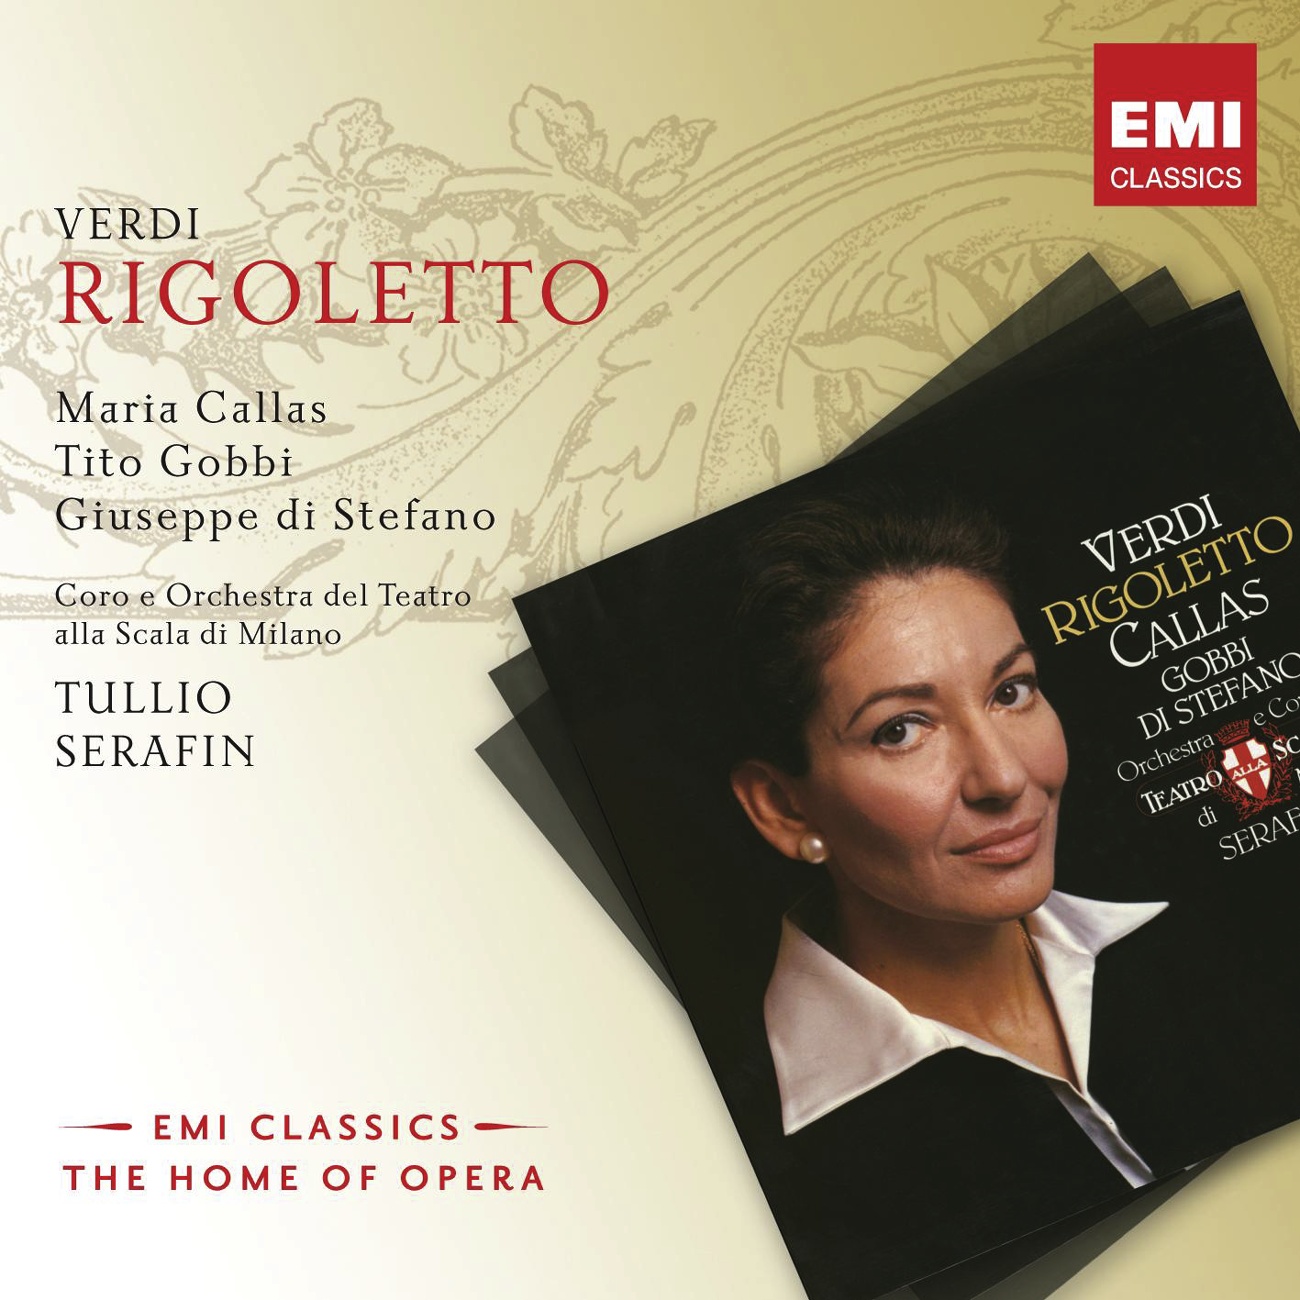 Rigoletto (1997 Digital Remaster), Act 2: Cortigiani, vil razza dannata (Rigoletto)